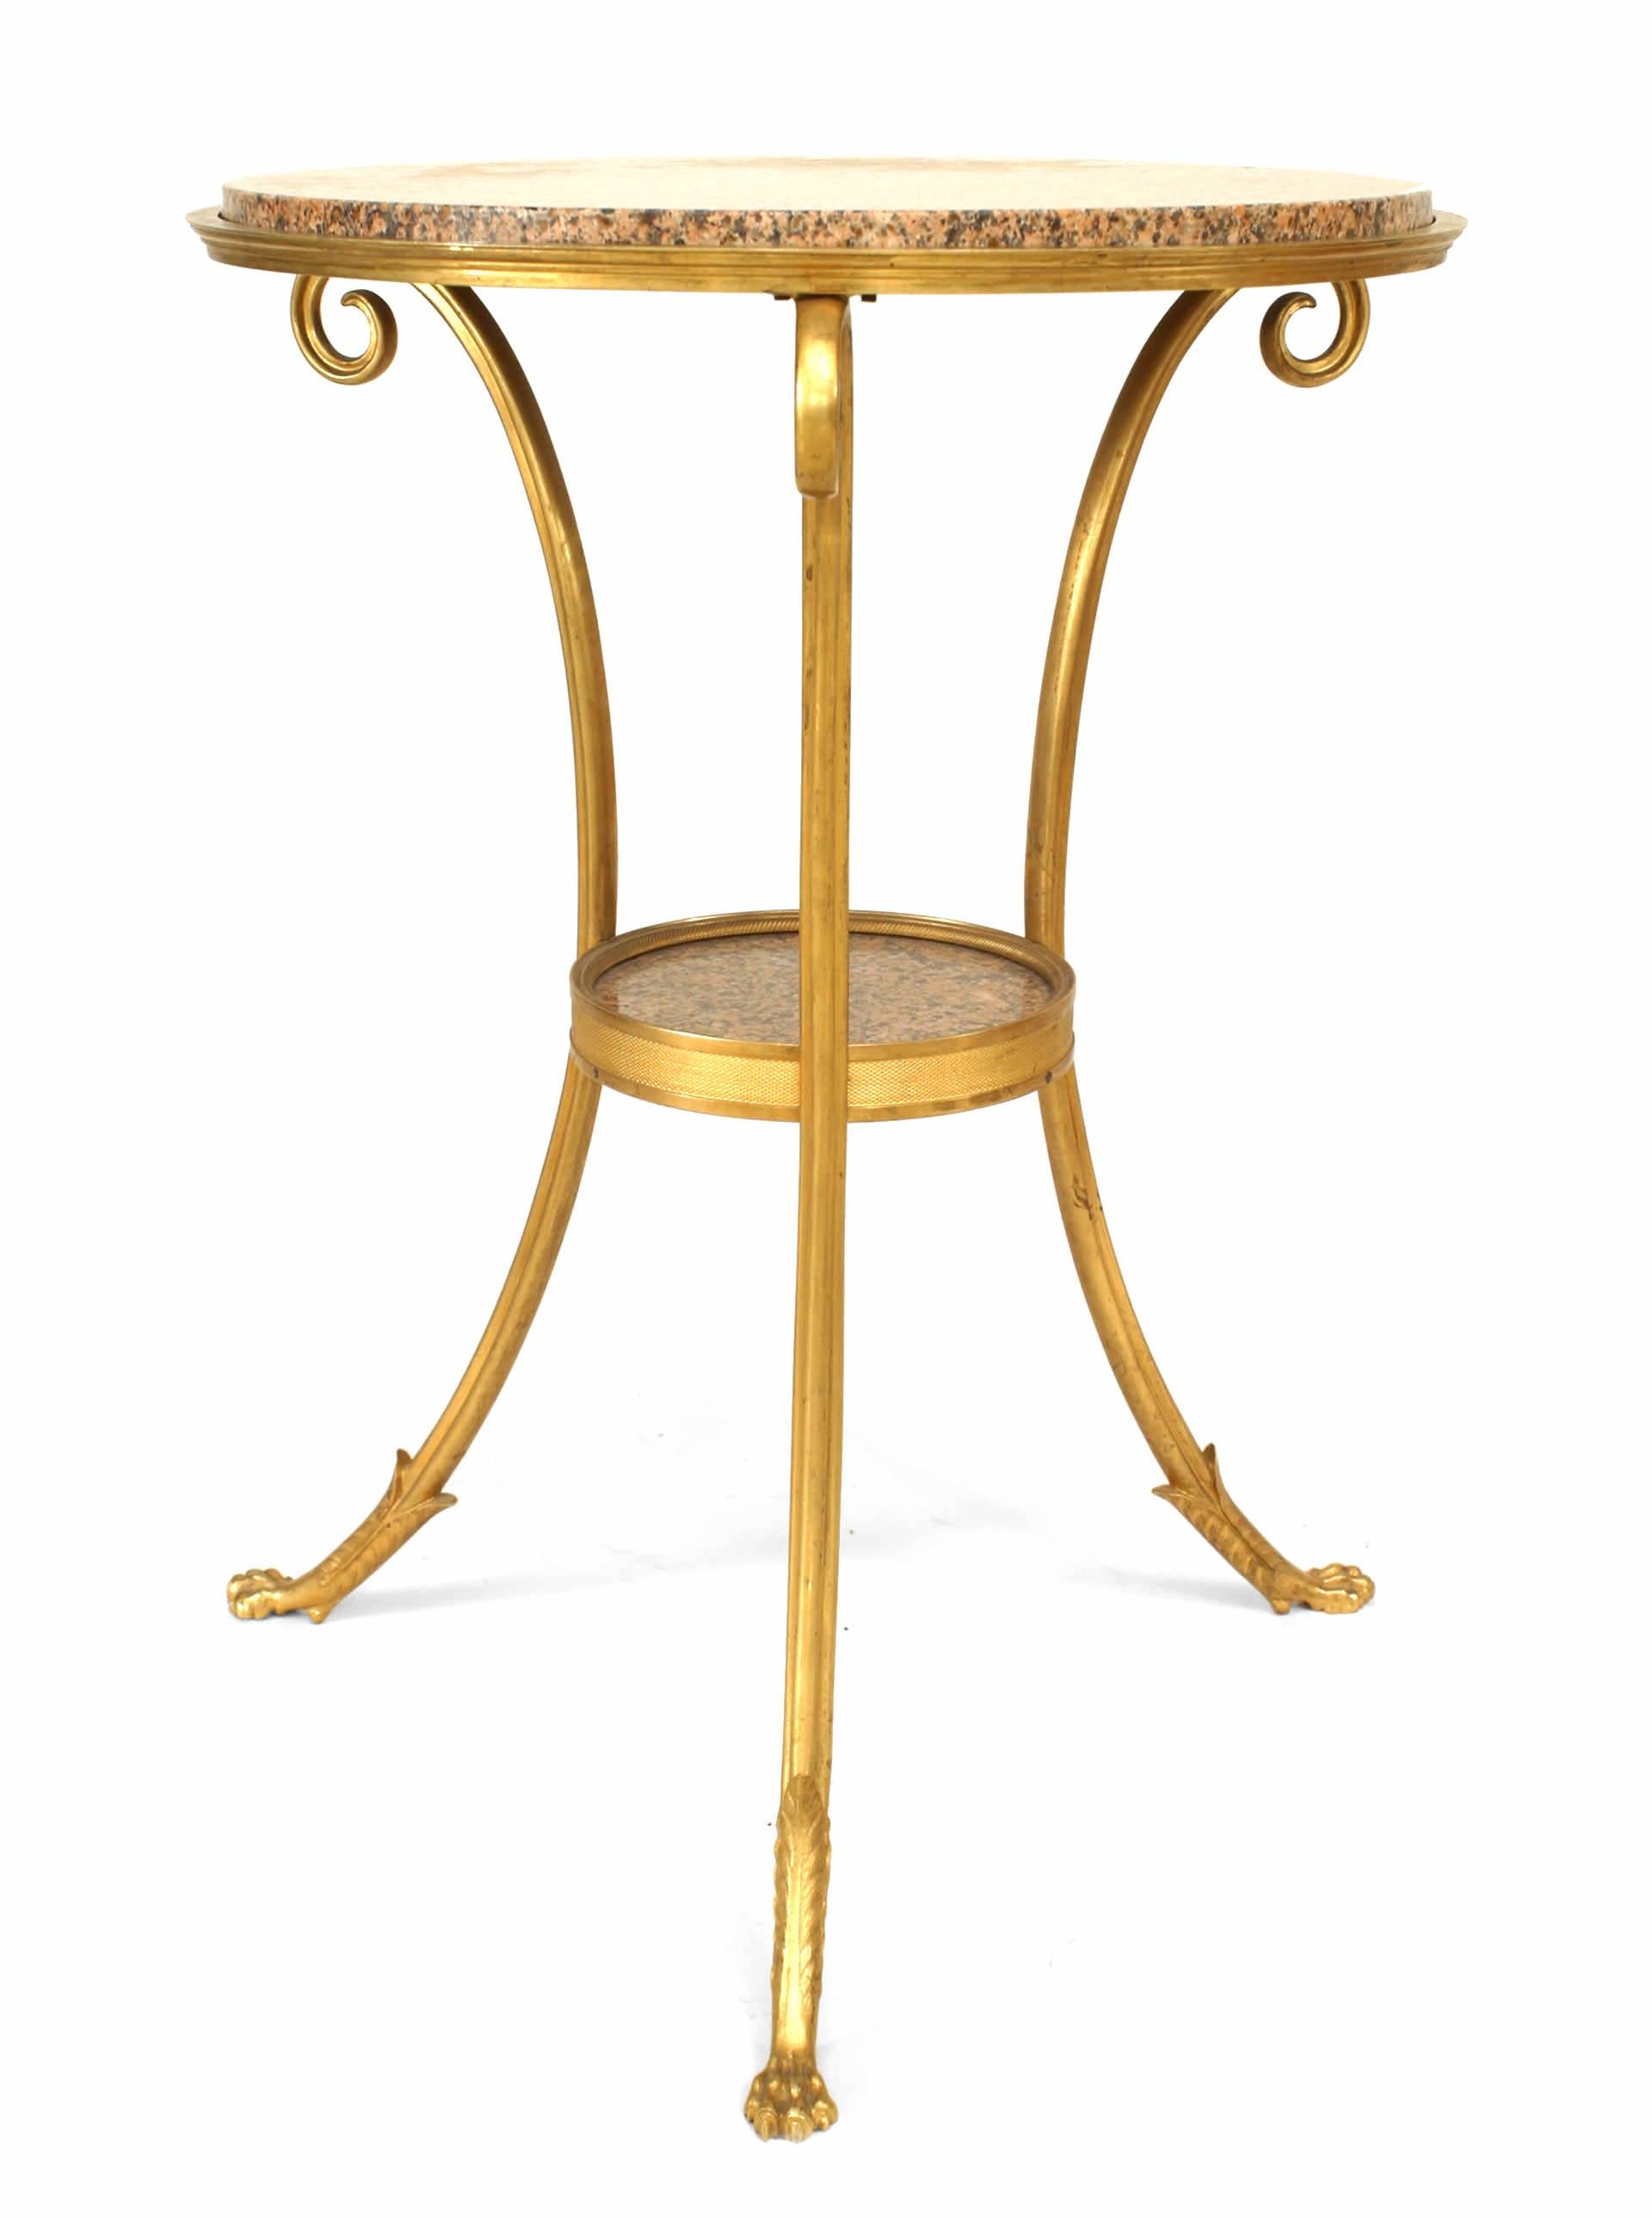 Französischer Beistelltisch aus vergoldeter Bronze im Directoire-Stil (20. Jh.) mit 3 geschwungenen Beinen und eingesetzter runder Platte und Ablage aus rosa und schwarz gesprenkeltem Marmor.